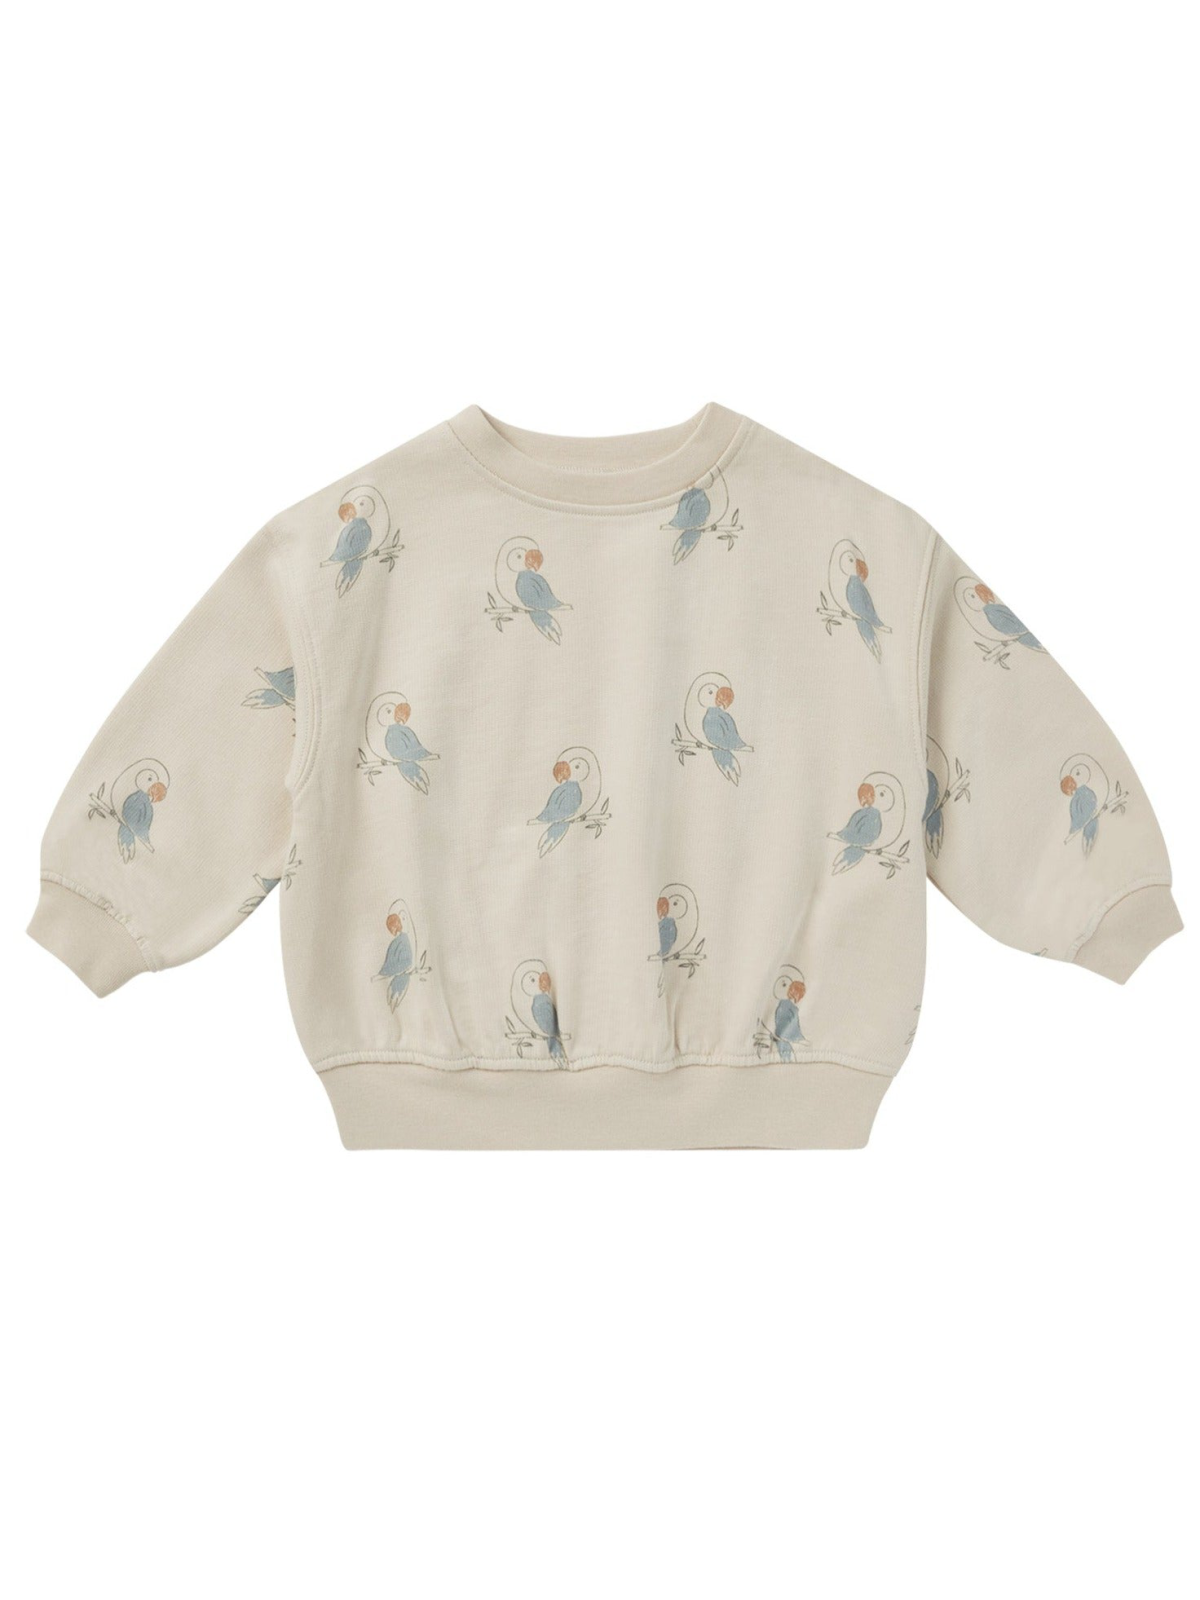 Rylee & Cru Sweatshirt, Parrots